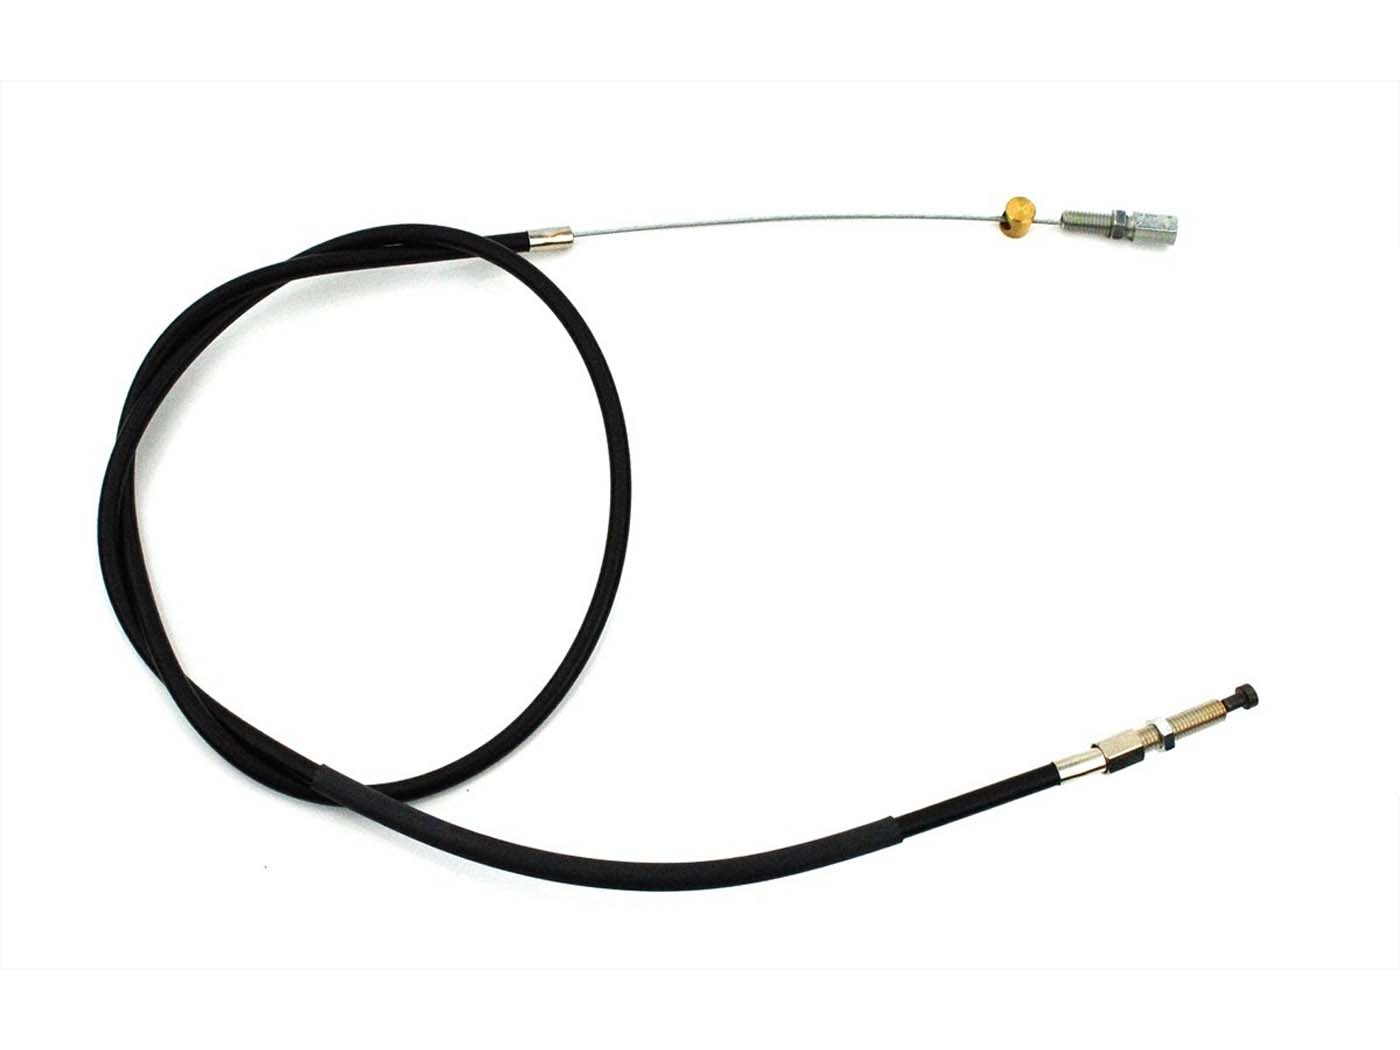 Clutch Cable 1060 Mm 840 For Kreidler Florett LF LH GT, Zündapp, Hercules Puch